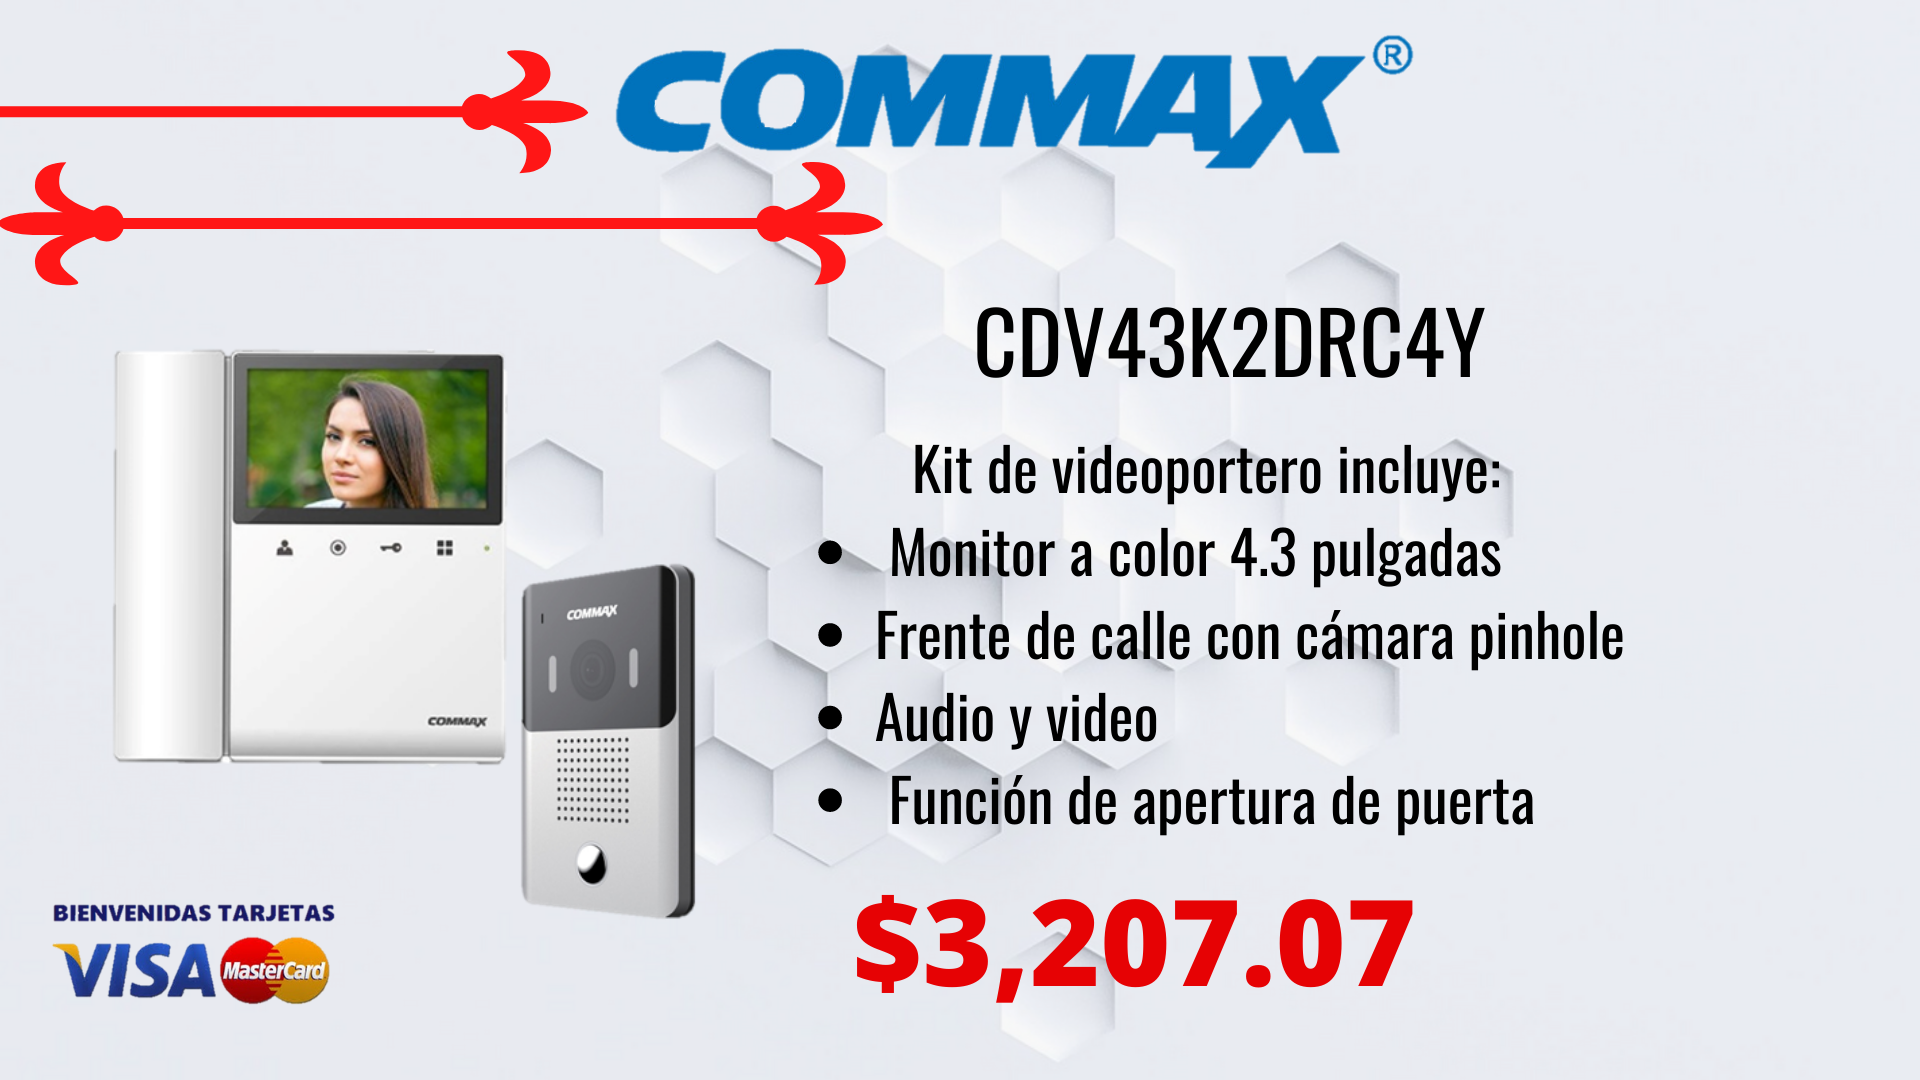 CDV43K2DRC4Y - Kit de videoportero con cámara pinhole commax